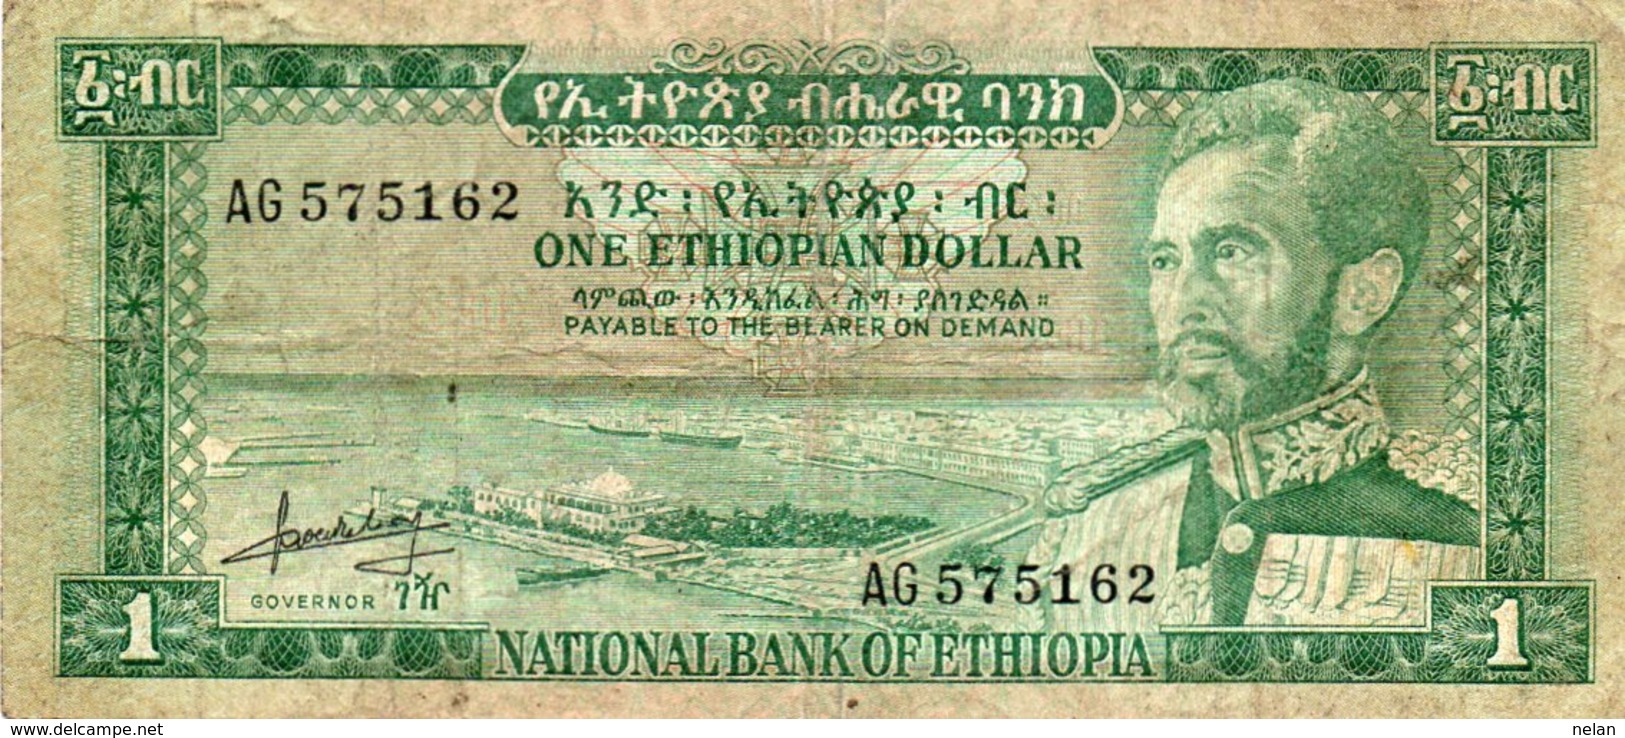 ETHIOPIA 1 DOLLAR 1966 P-25 - Etiopia